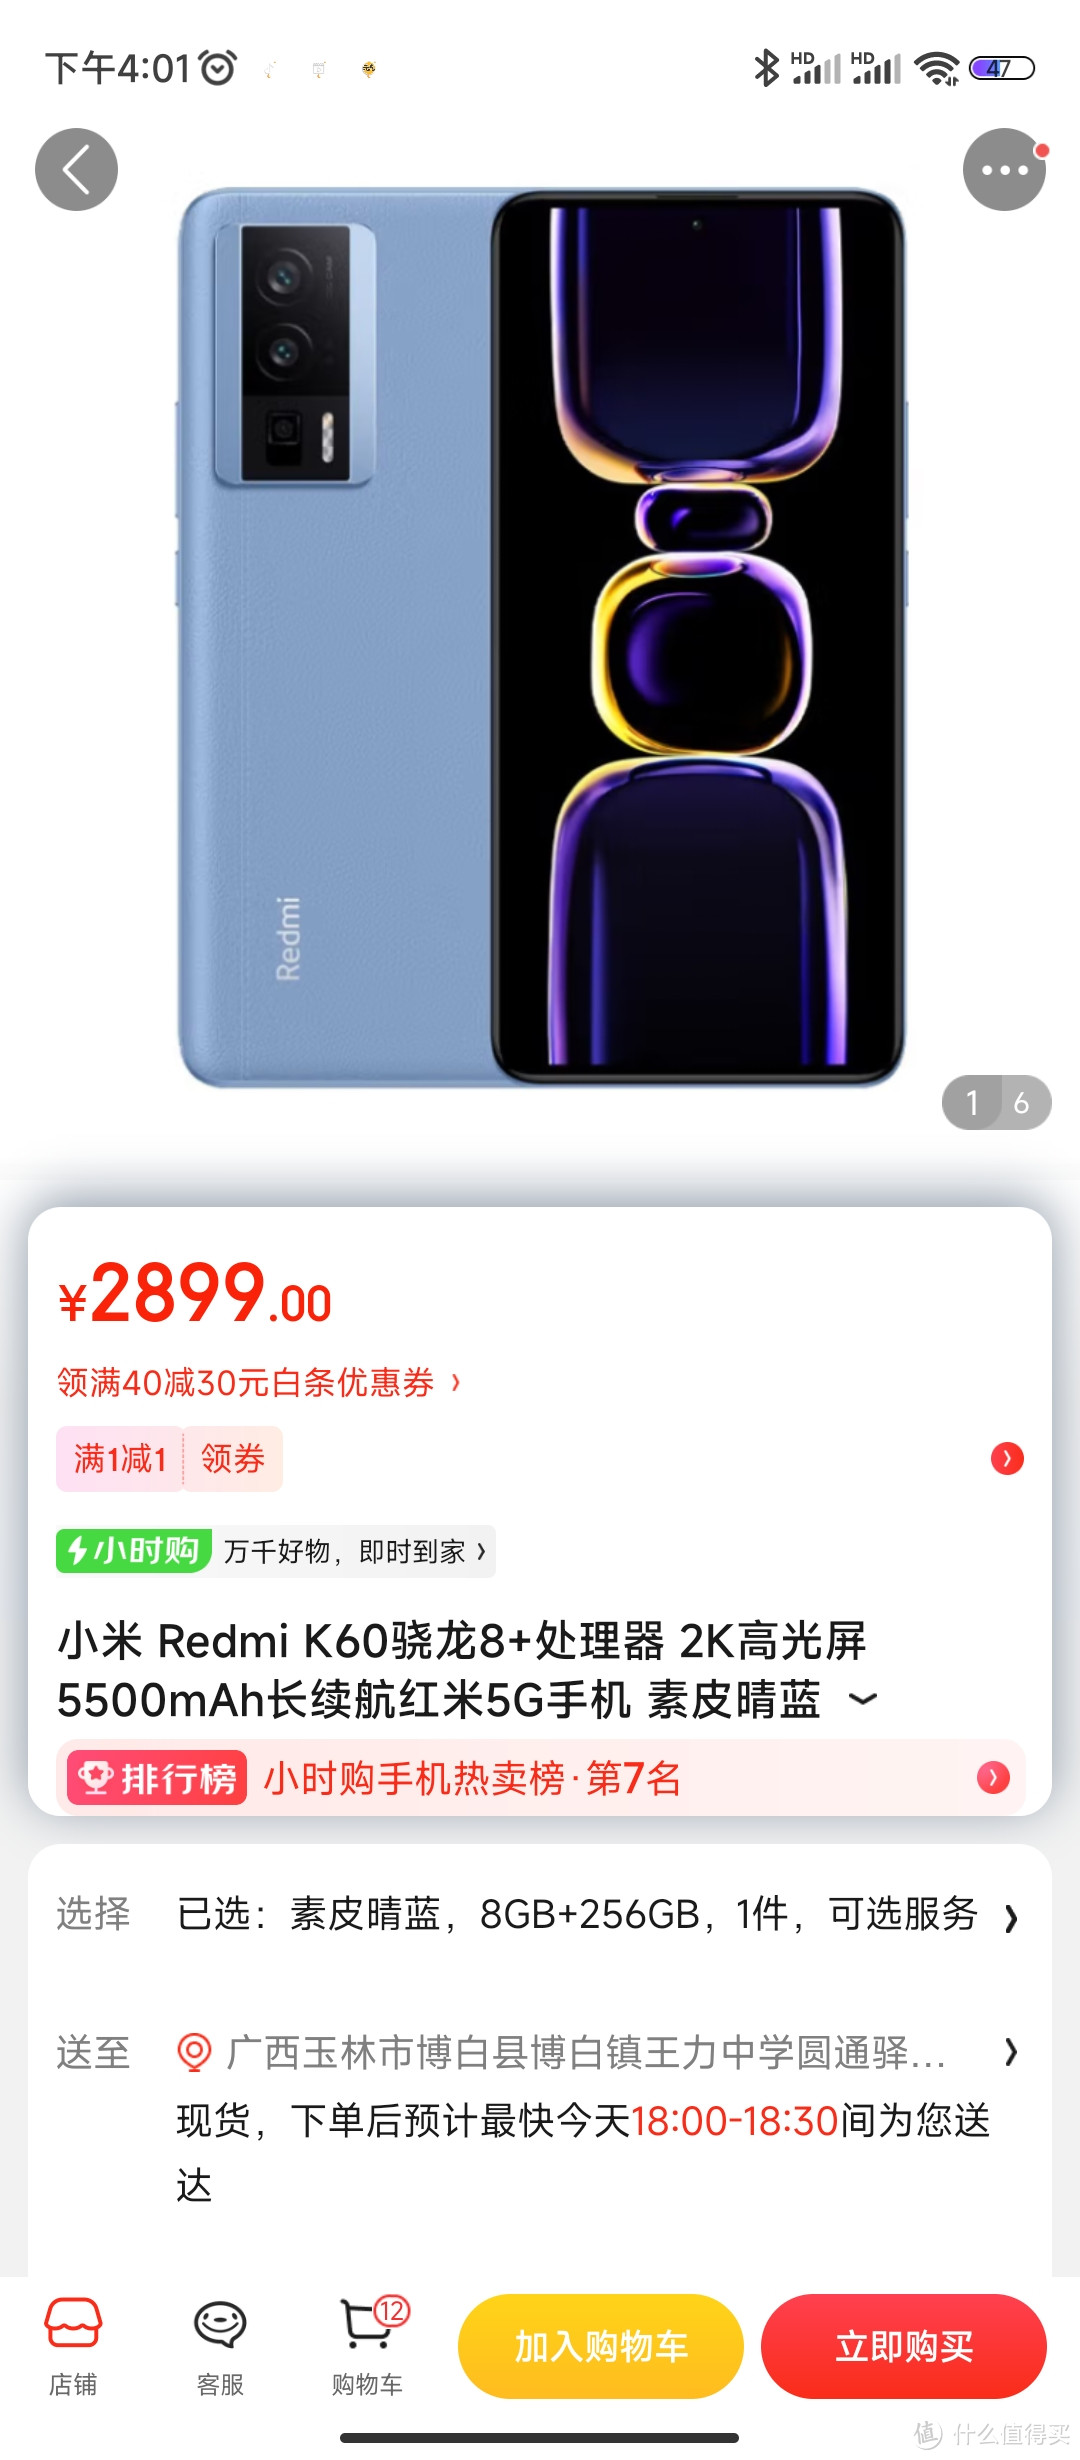 小米 Redmi K60骁龙8+处理器 2K高光屏 5500mAh长续航红米5G手机 素皮晴蓝 8GB+256GB